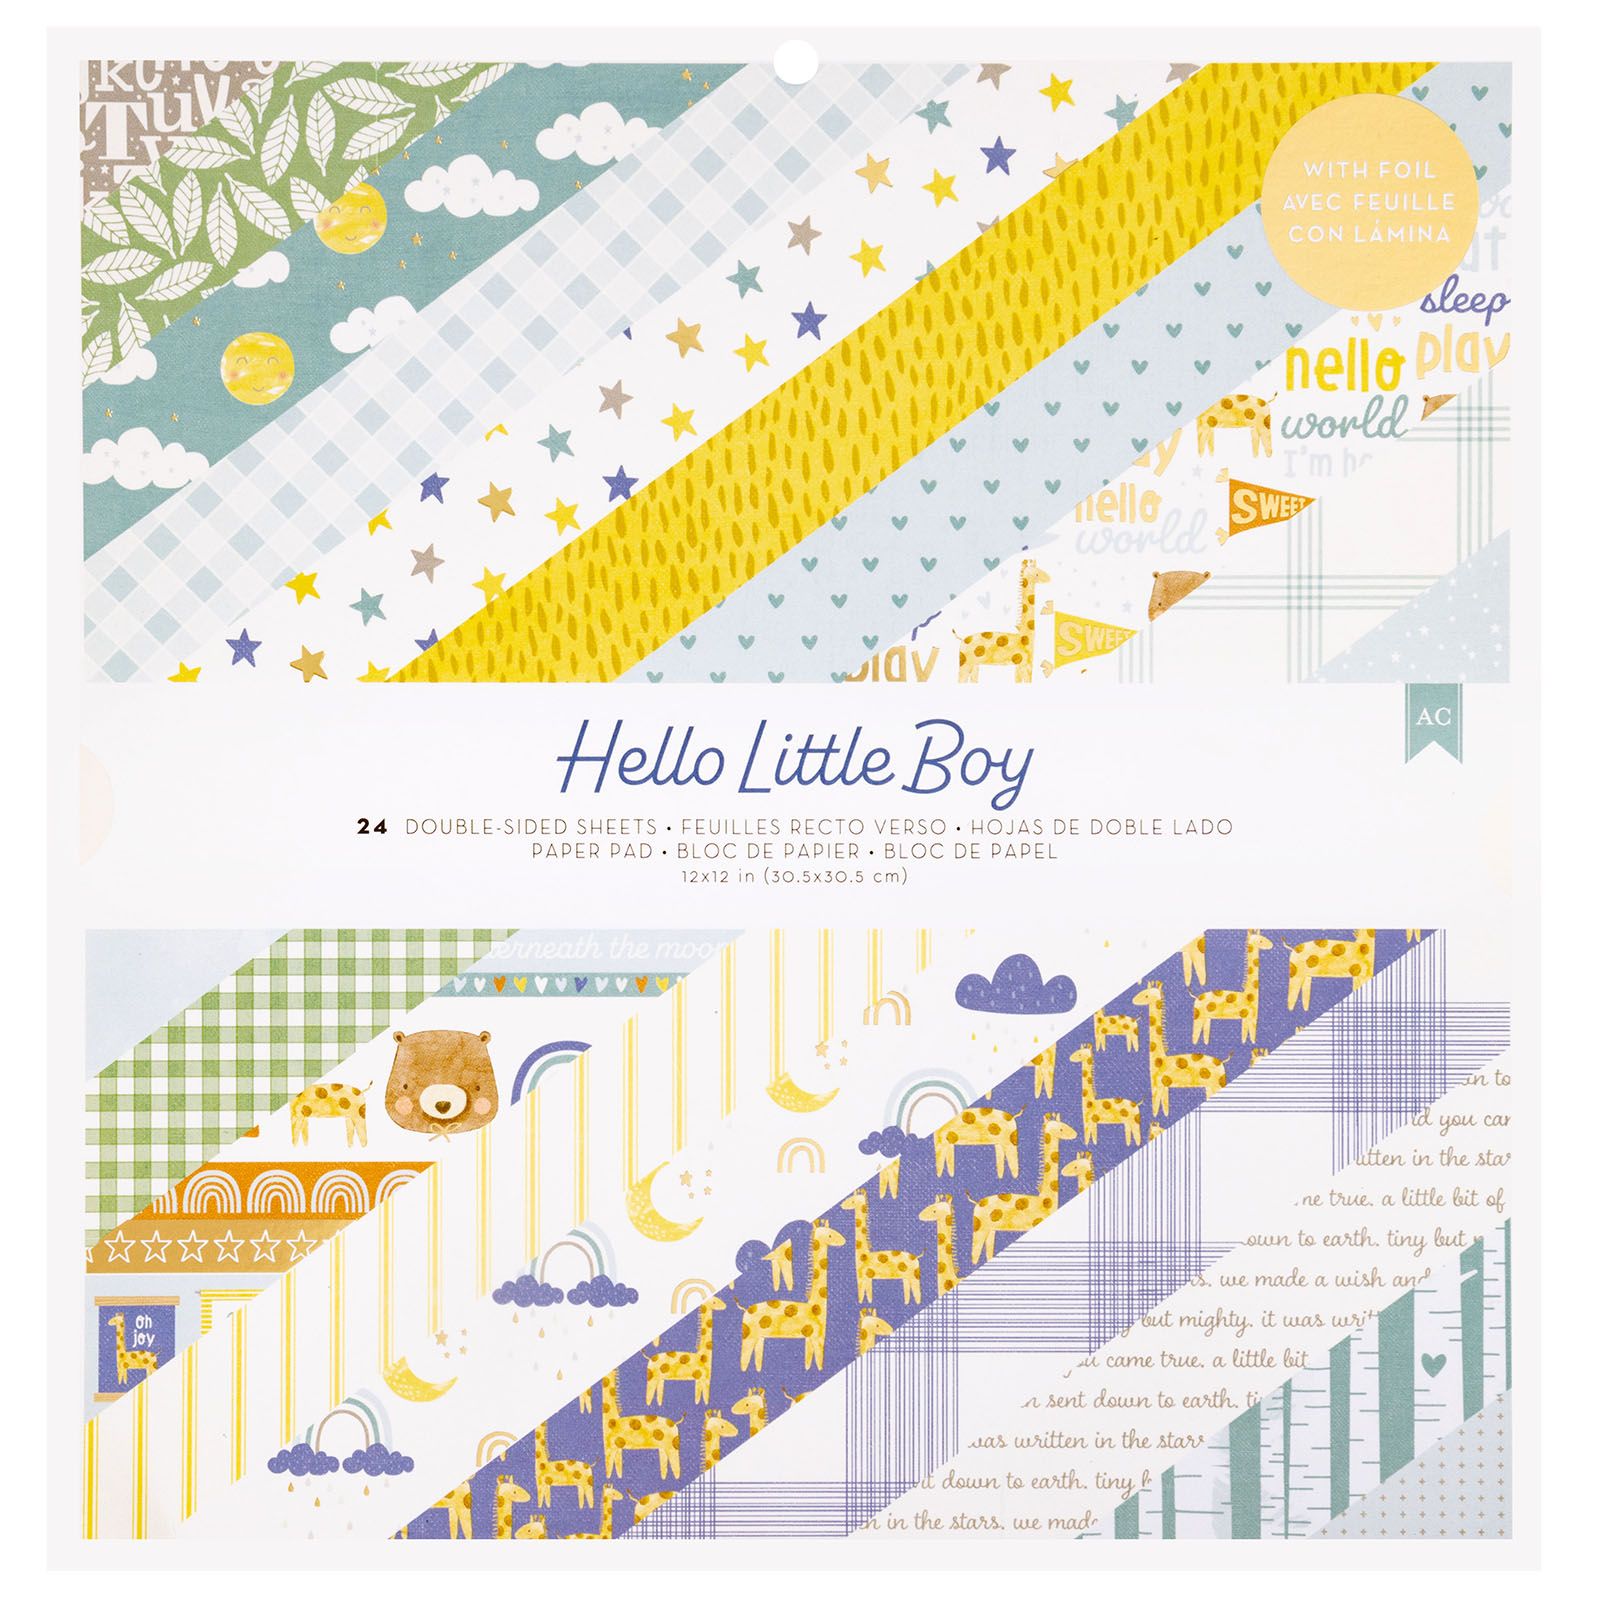 Hello Little Boy Paper Pad 12" / Block Papel Hola Pequeño